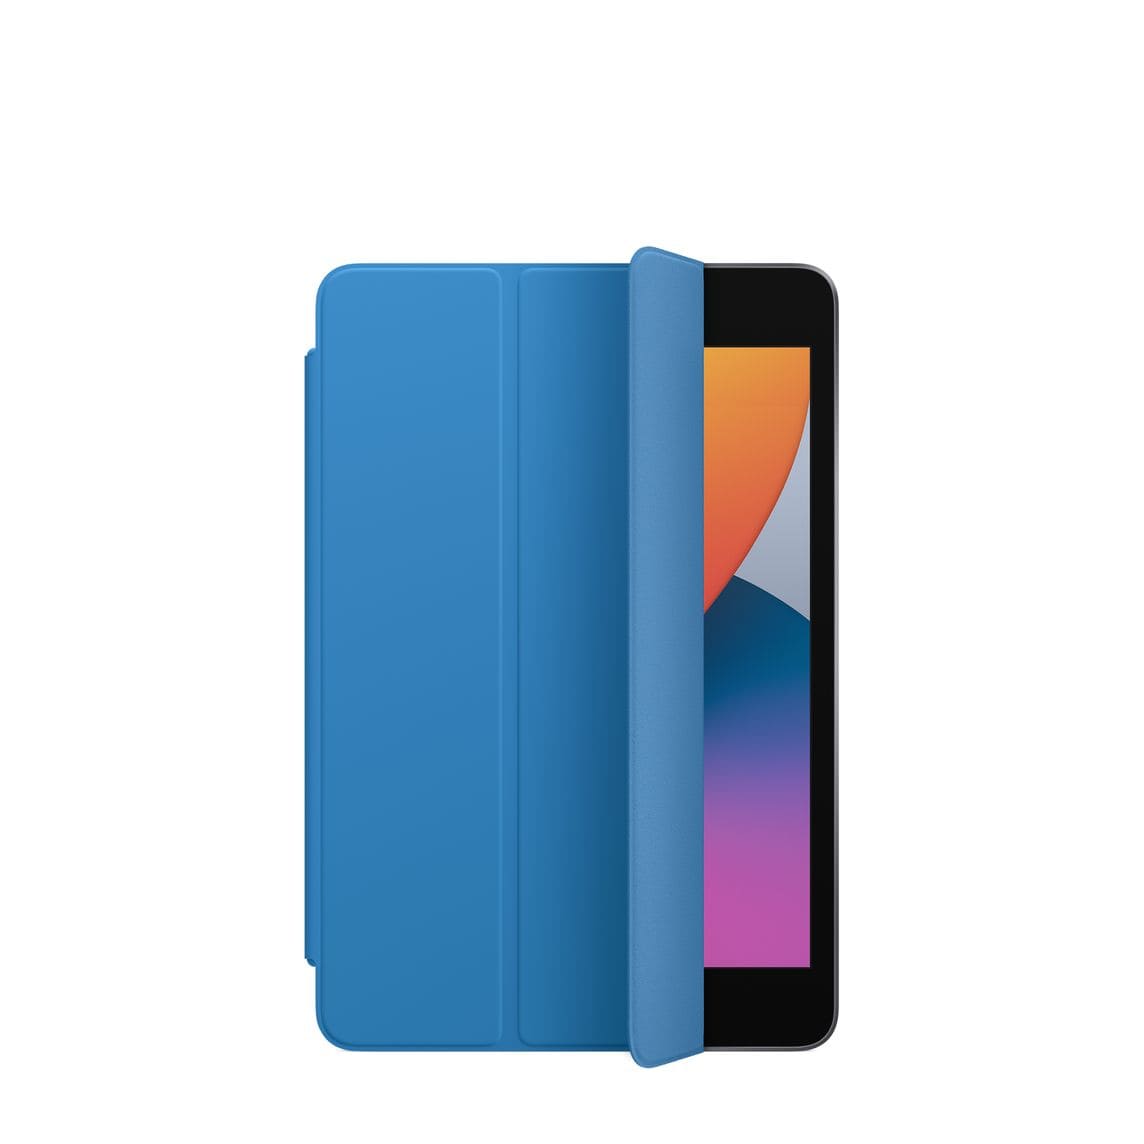 Фото — Чехол Apple Smart Cover для iPad mini (2019), «синяя волна»